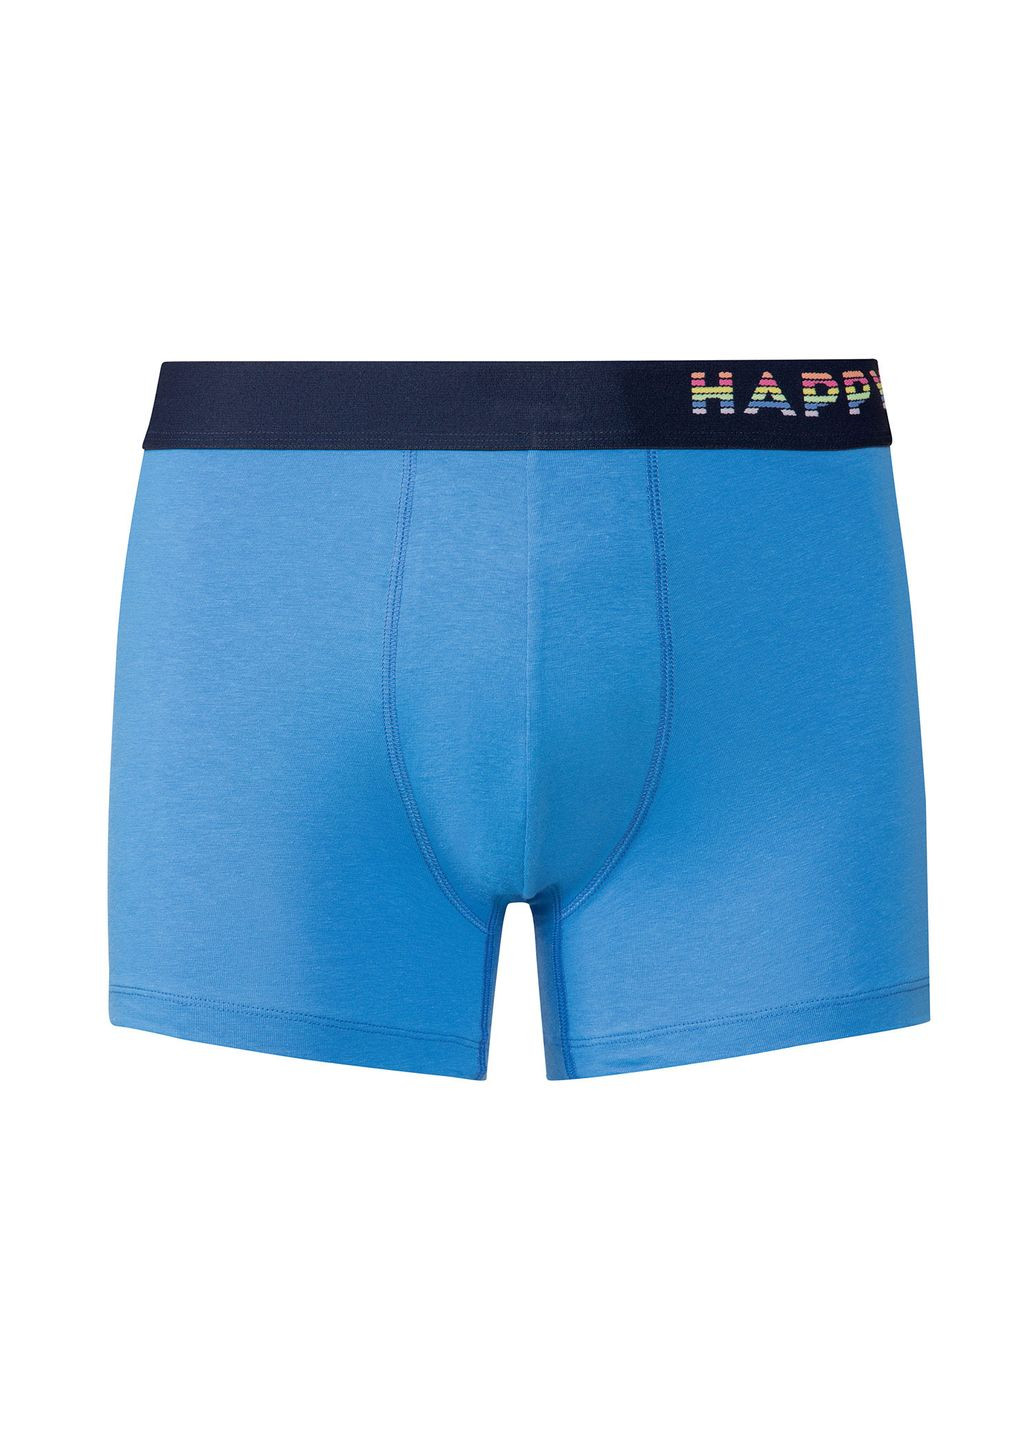 Труси шорти однотонні для чоловіка 400521 блакитний Happy Shorts шорты (268296887)